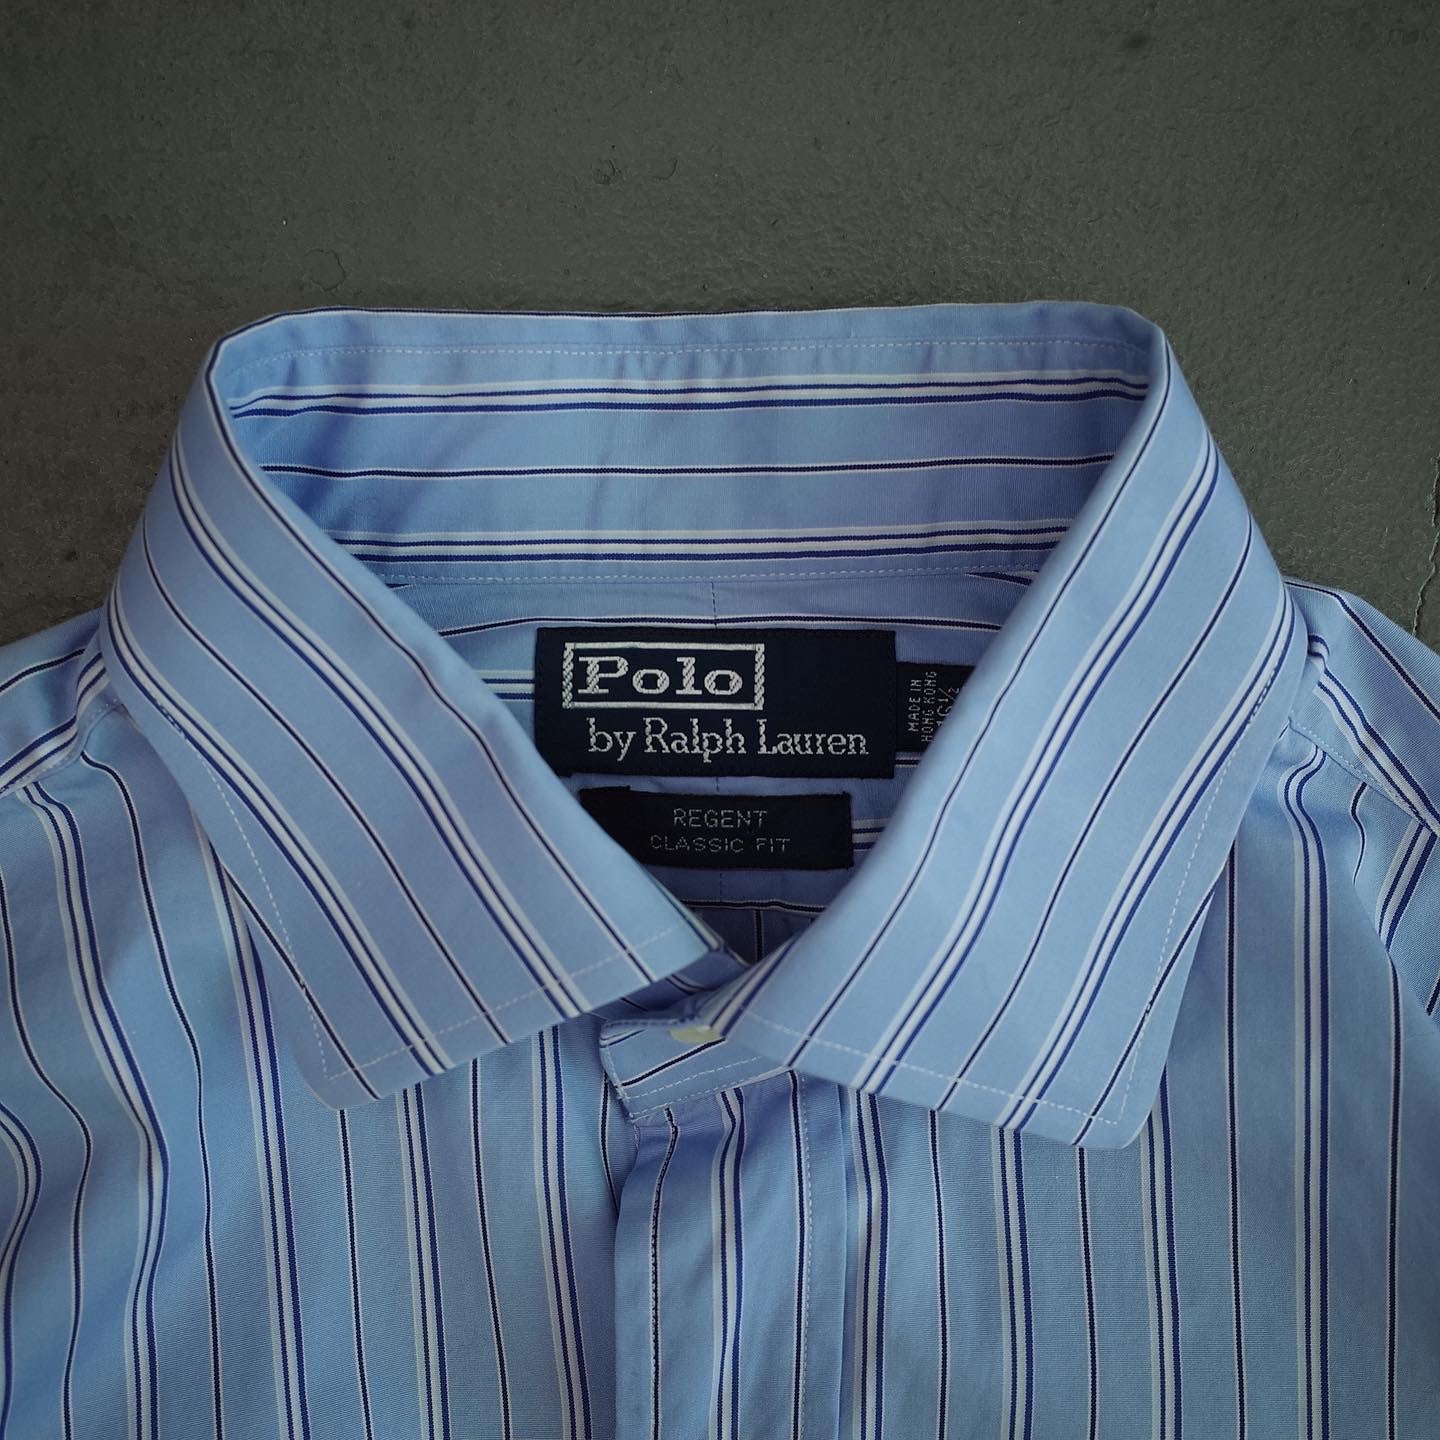 Polo by Ralph Lauren REGENT Classic Fit L/S Shirt